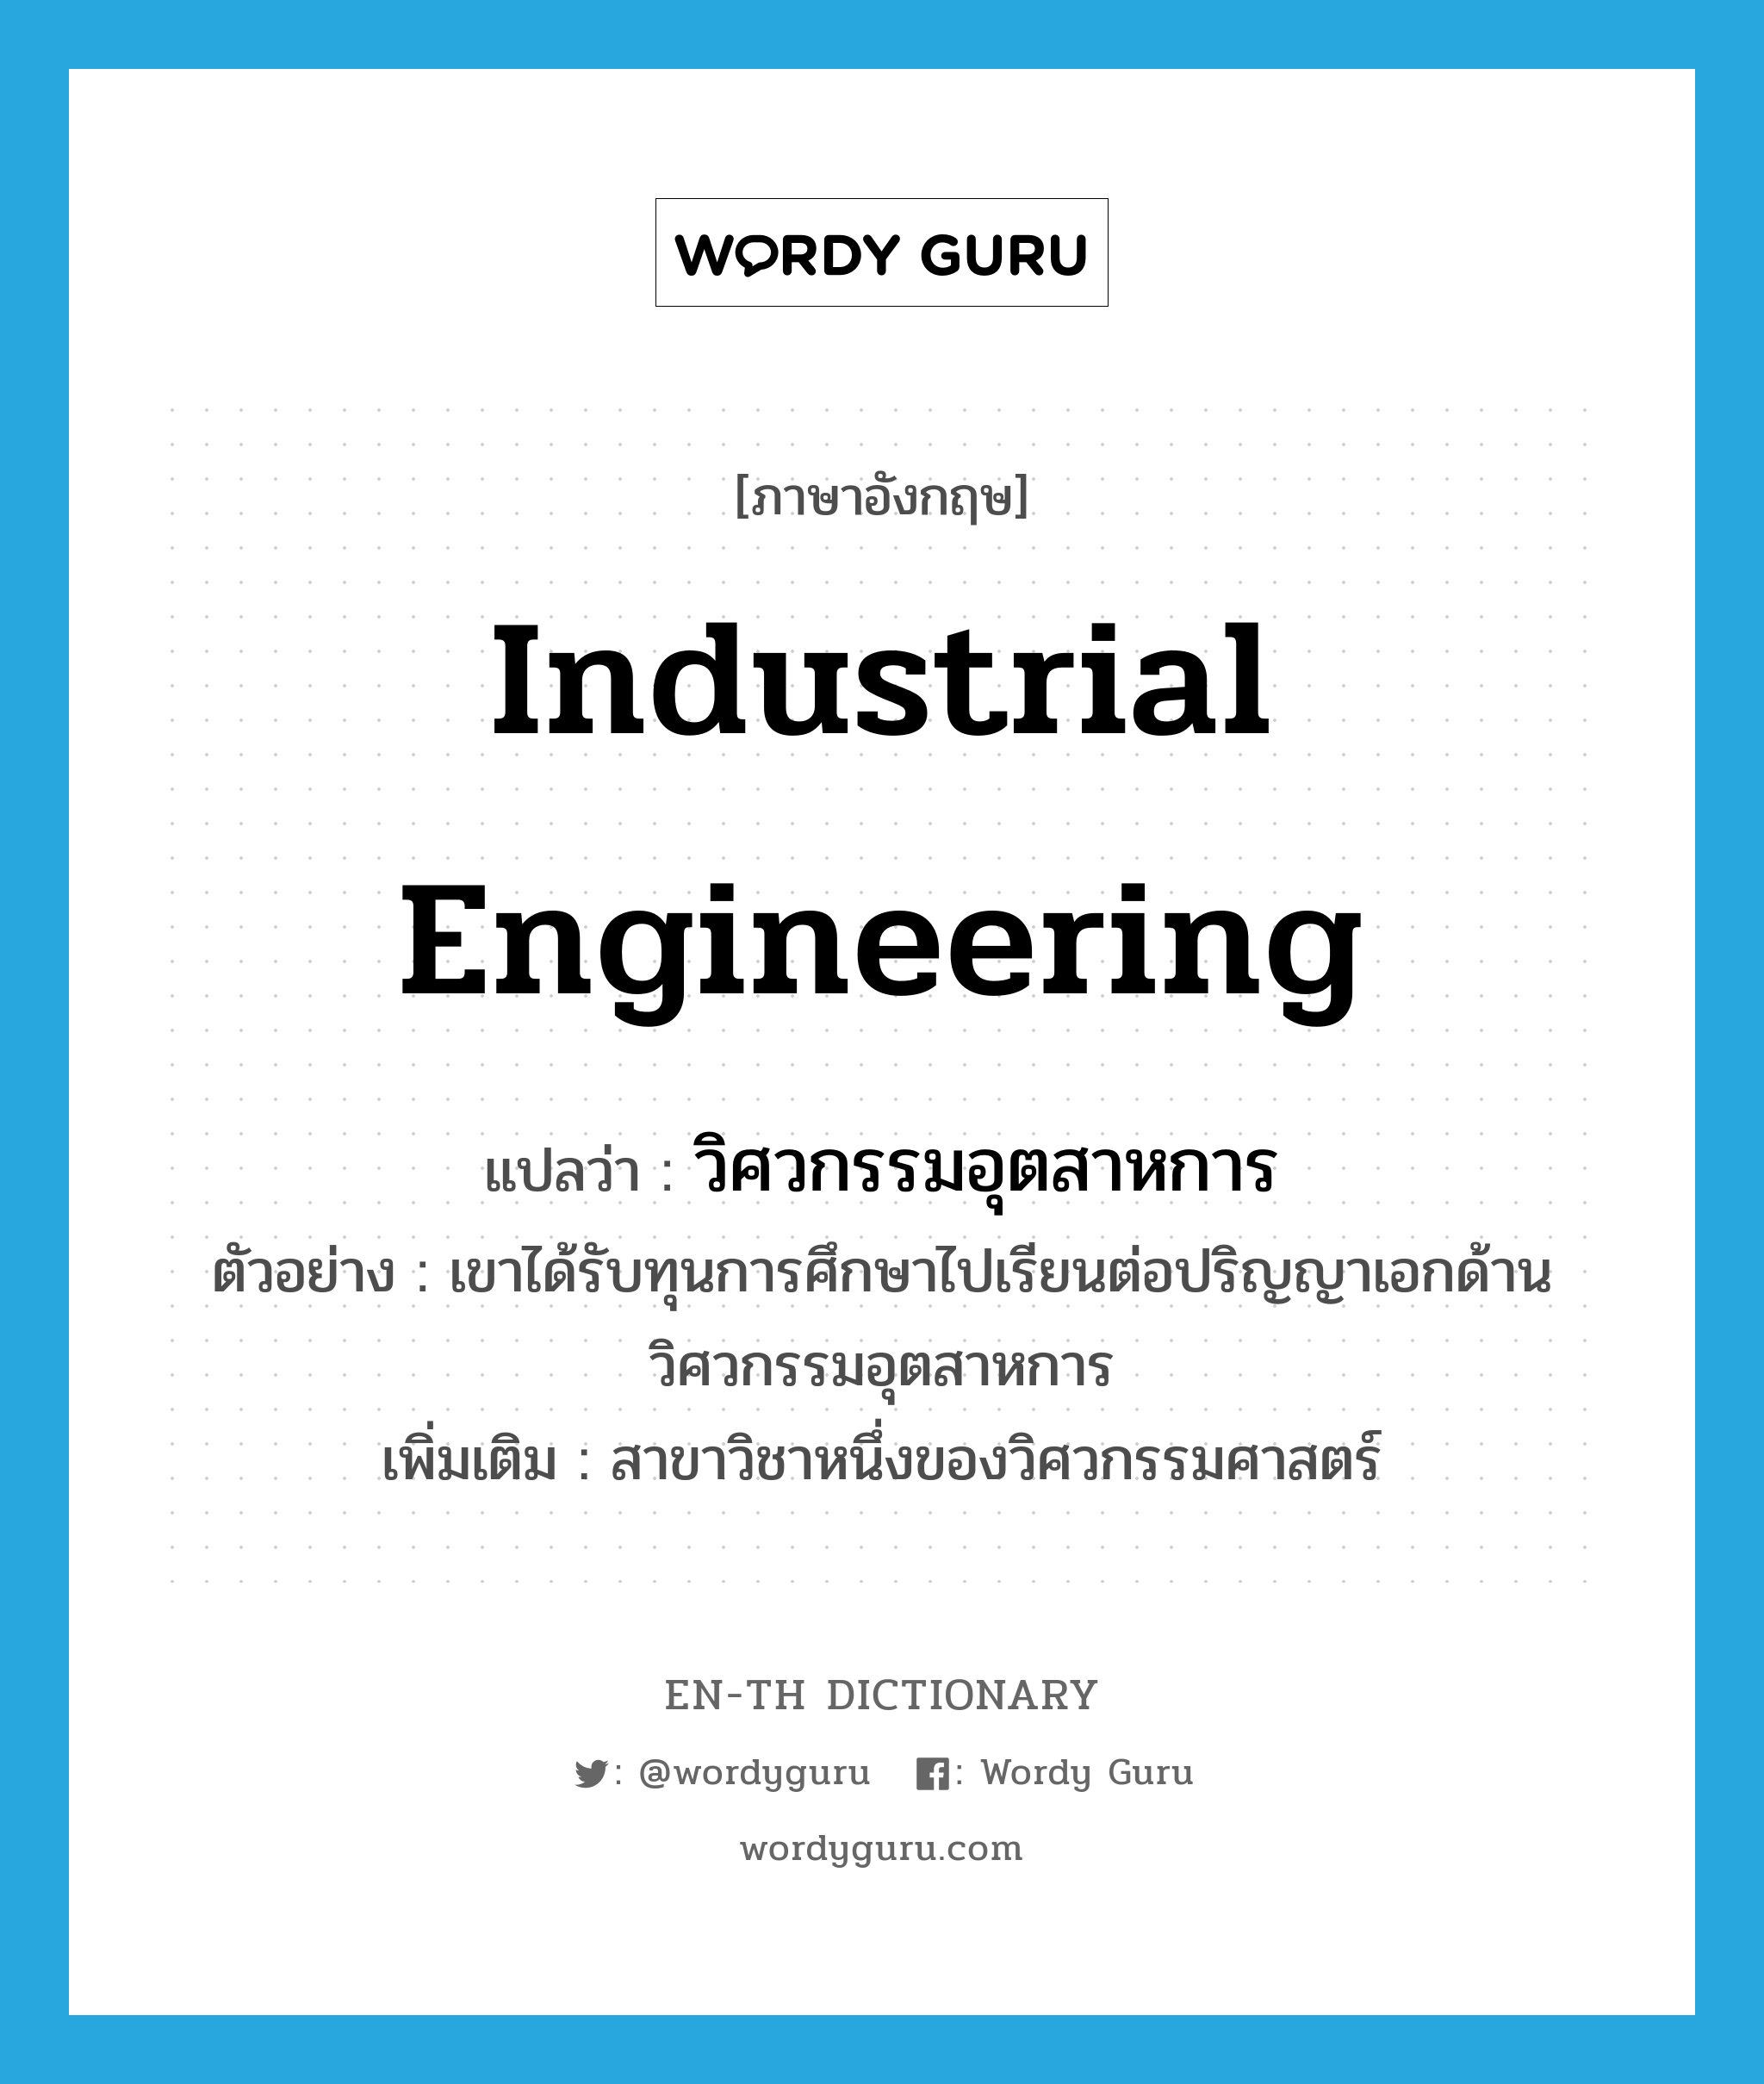 industrial engineering แปลว่า?, คำศัพท์ภาษาอังกฤษ industrial engineering แปลว่า วิศวกรรมอุตสาหการ ประเภท N ตัวอย่าง เขาได้รับทุนการศึกษาไปเรียนต่อปริญญาเอกด้านวิศวกรรมอุตสาหการ เพิ่มเติม สาขาวิชาหนึ่งของวิศวกรรมศาสตร์ หมวด N